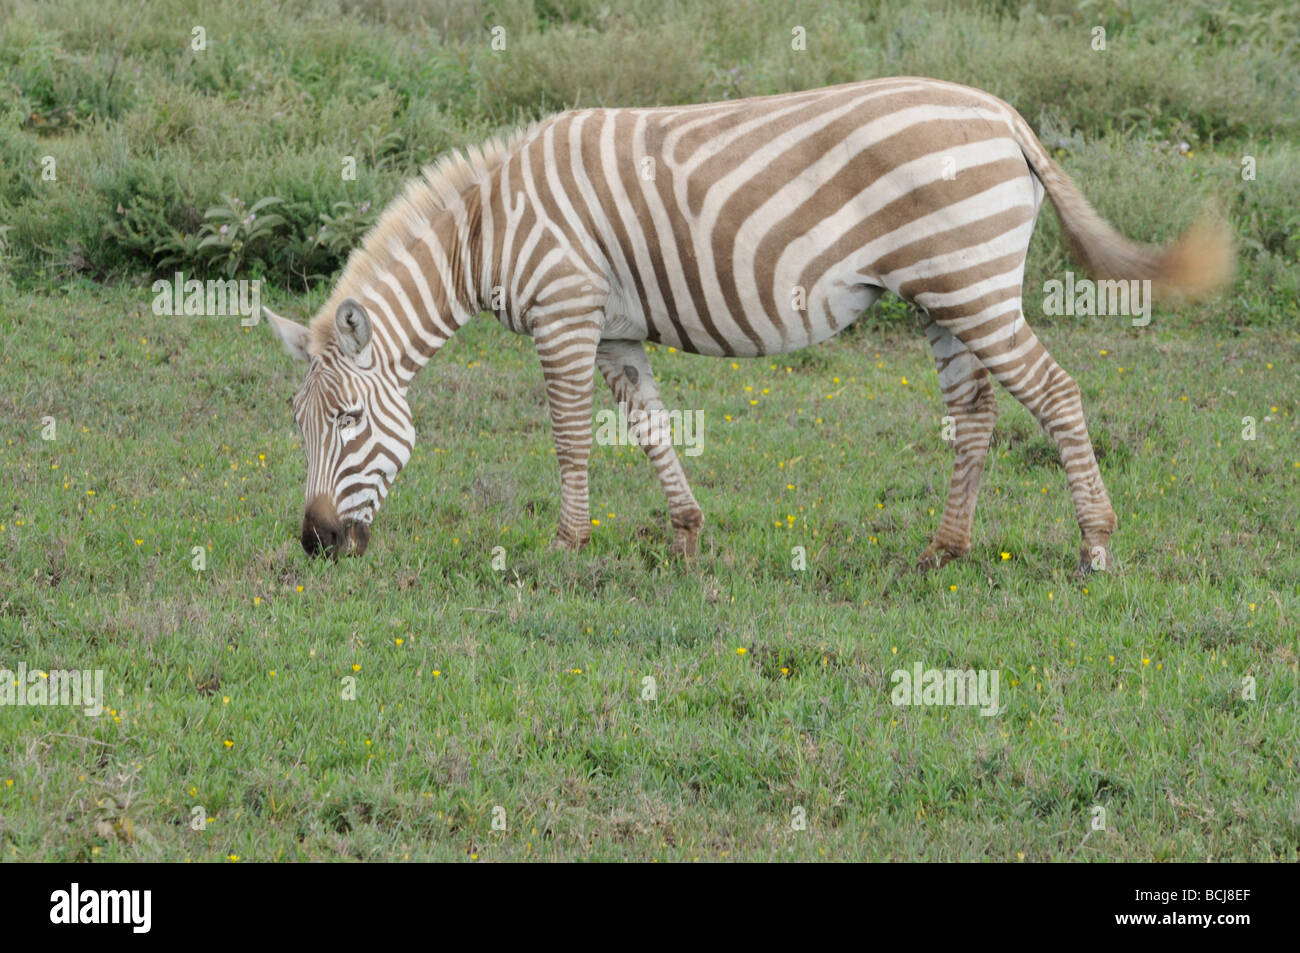 Stock photo of a light-phase zebra grazing, Ndutu, Tanzania, February 2009. Stock Photo